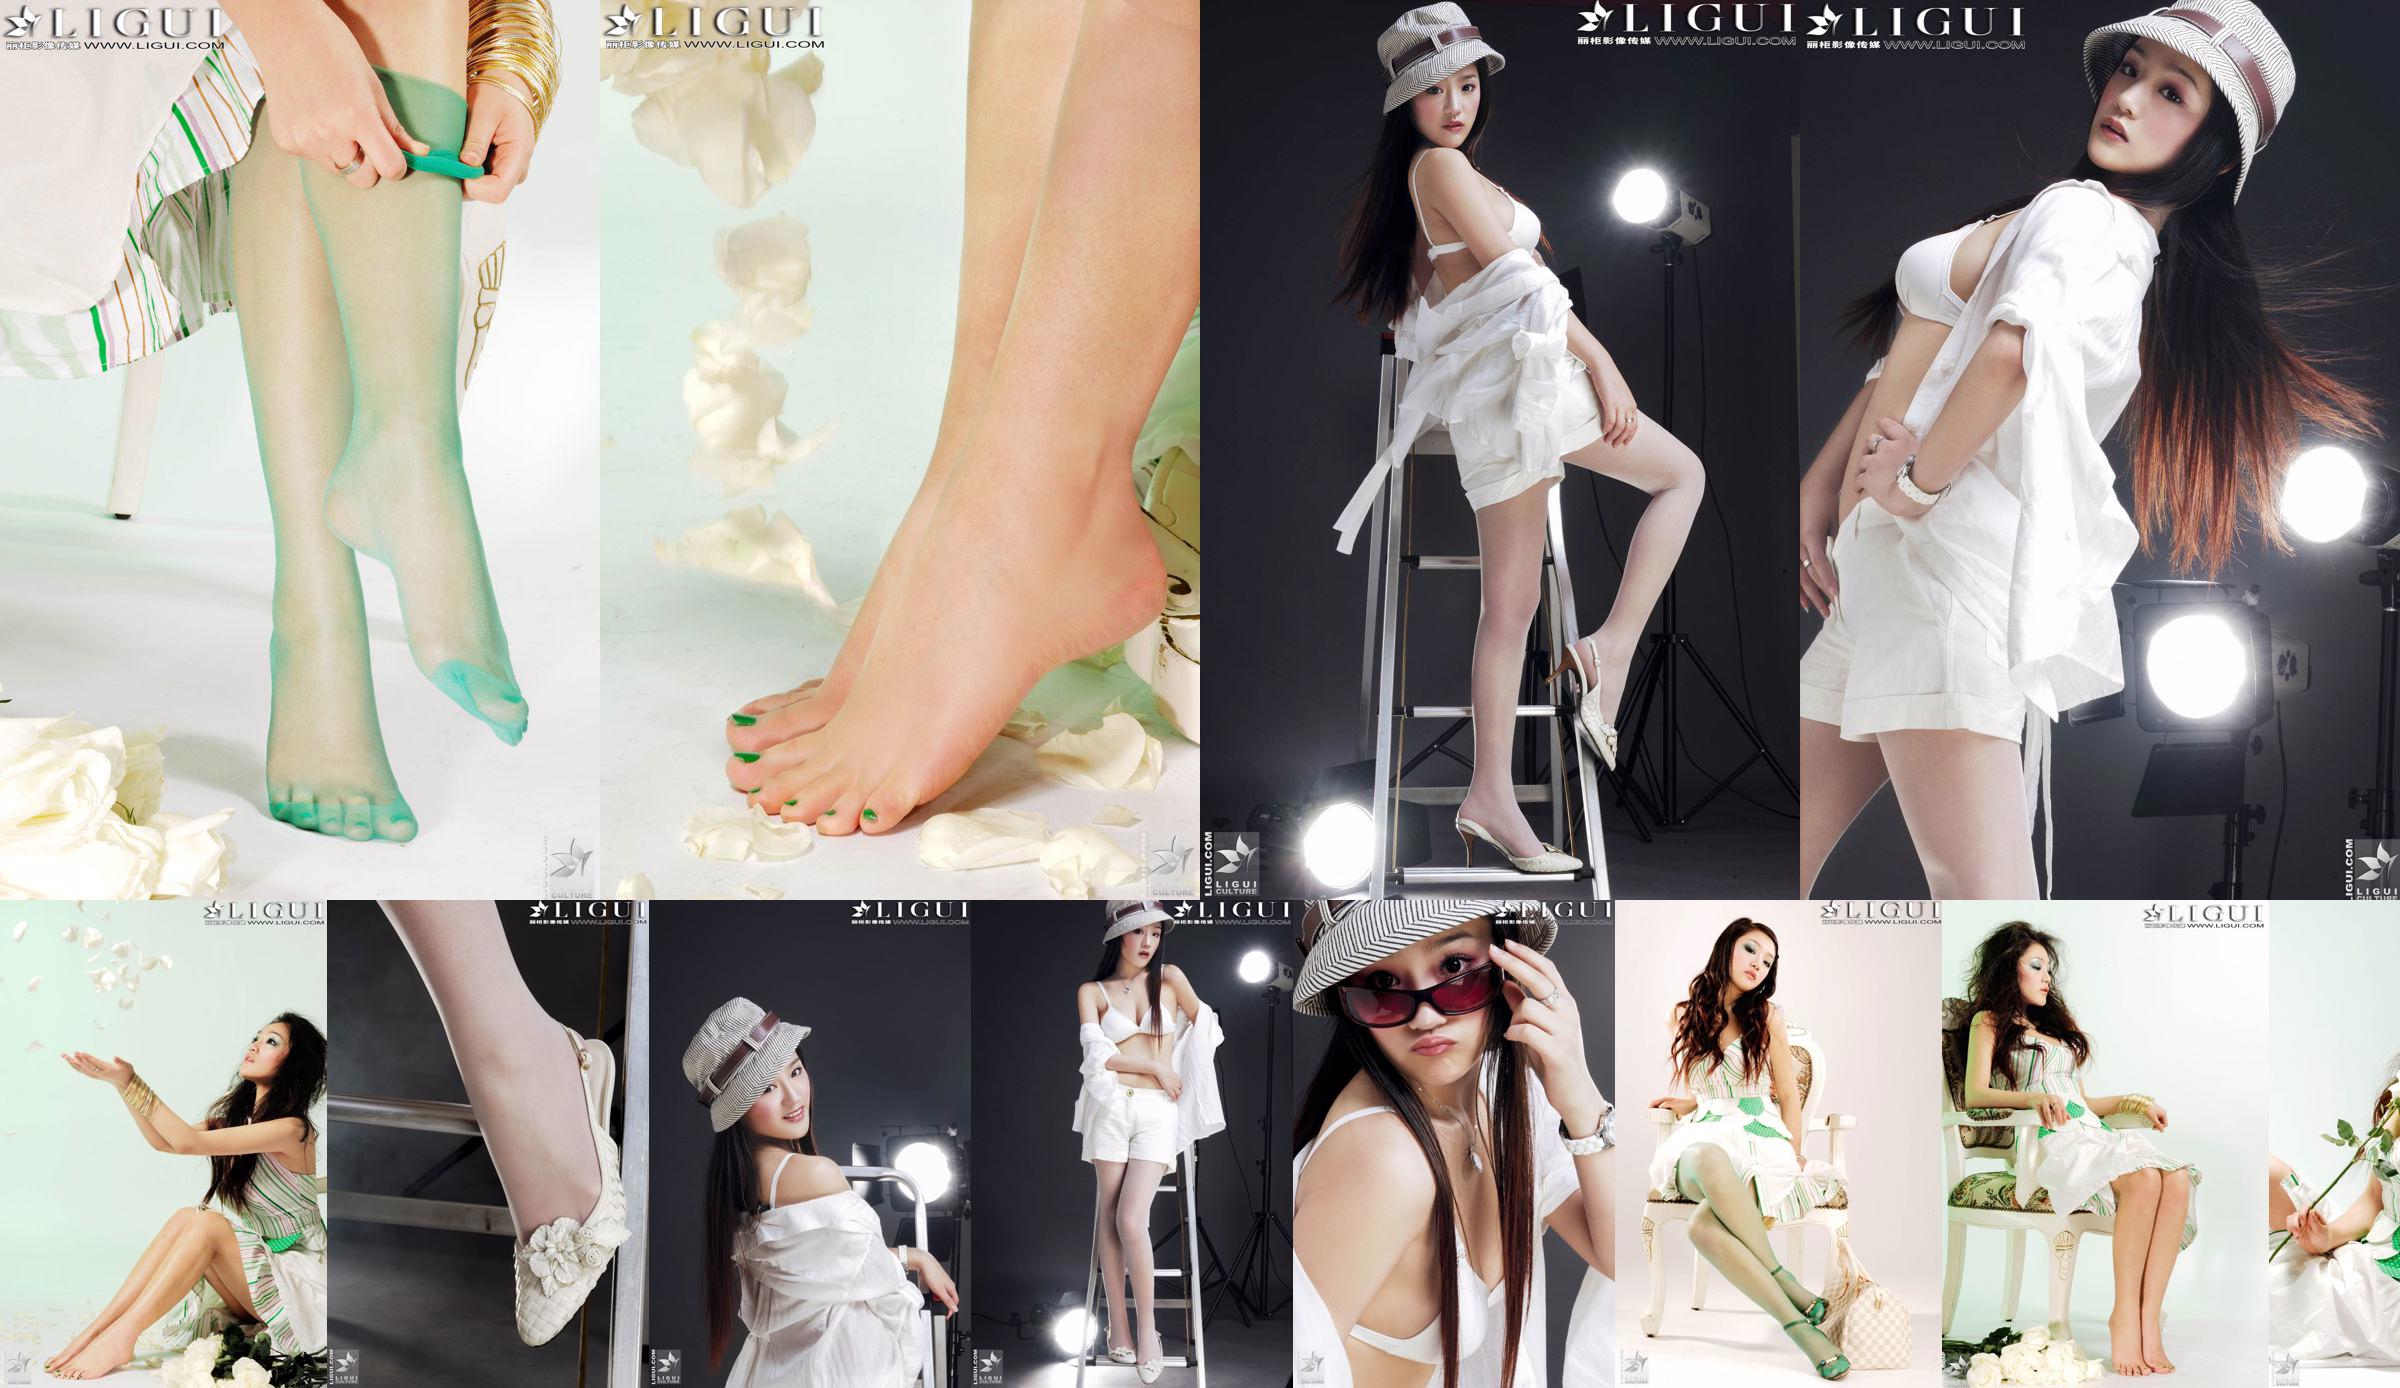 [丽柜贵 foot LiGui] นางแบบภาพถ่าย "Fashionable Foot" ของ Zhang Jingyan ขาสวยและเท้าไหม No.331de0 หน้า 15